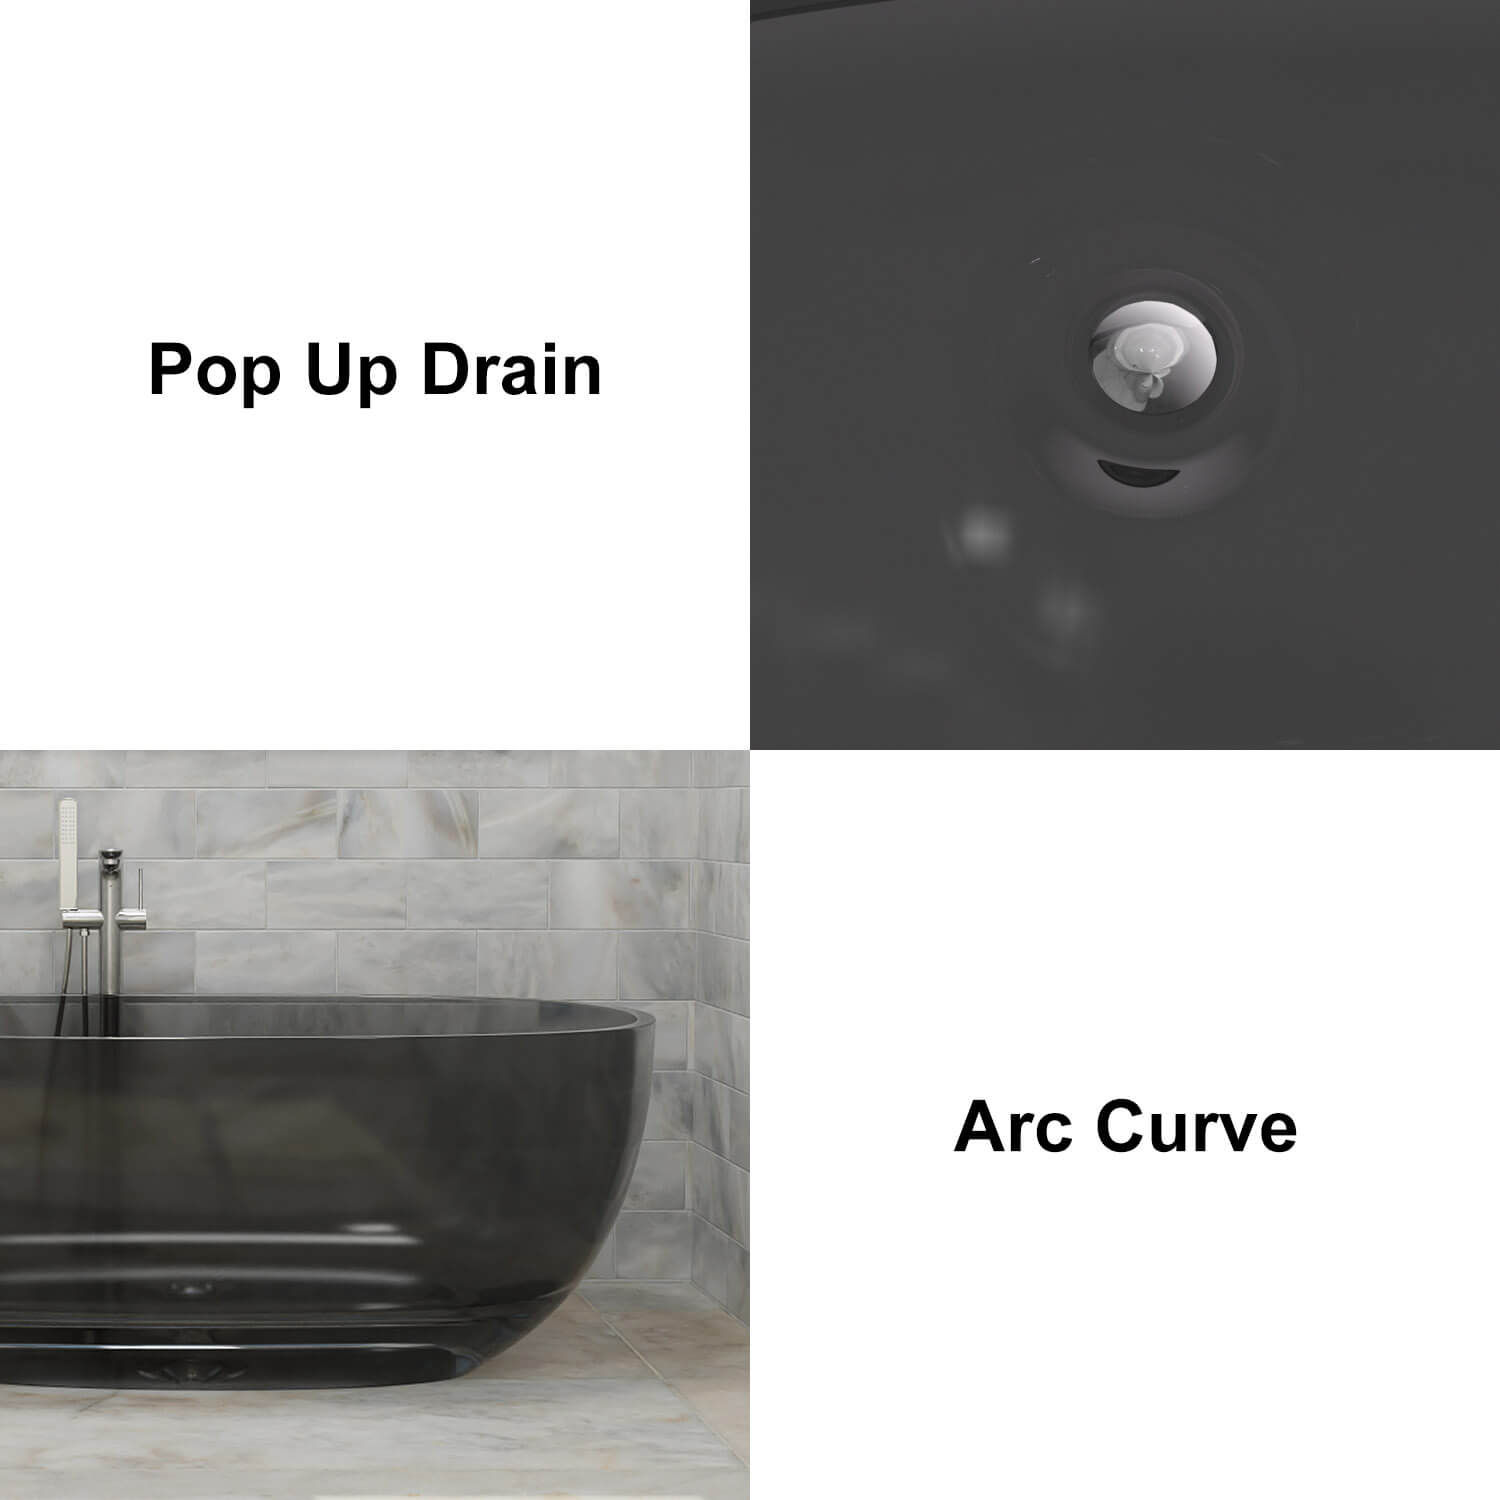 67&quot; Modern Art Resin Tub, Gray Transparent Egg Shape Freestanding Soaking Bathtub for Hotels